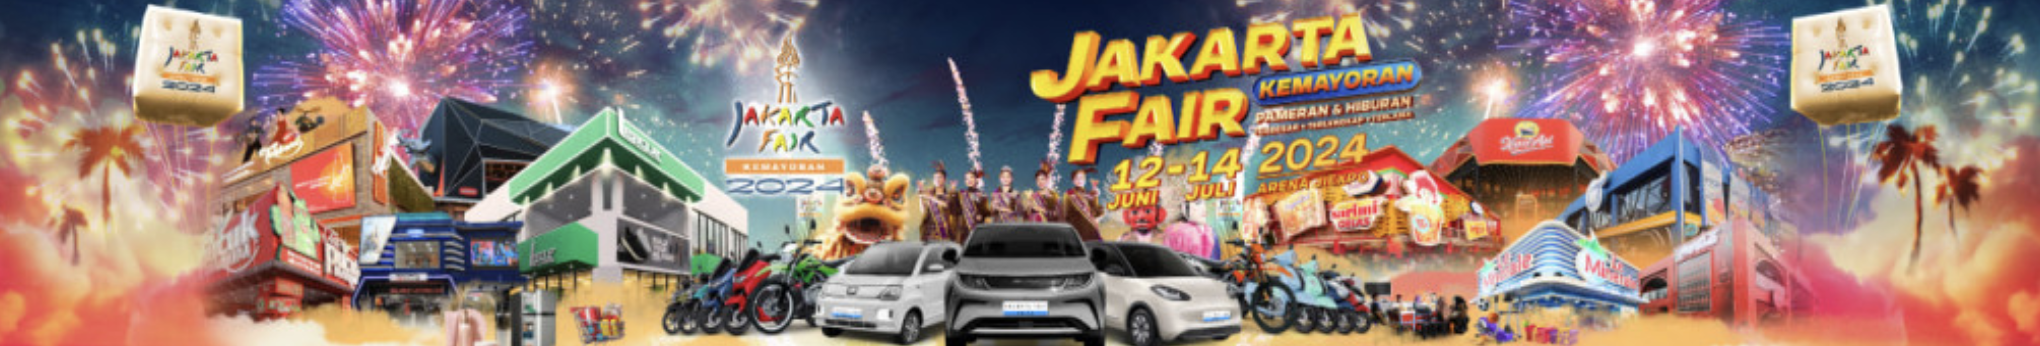 Jakarta Fair 2024 Kembali Hadir dengan Semarak!